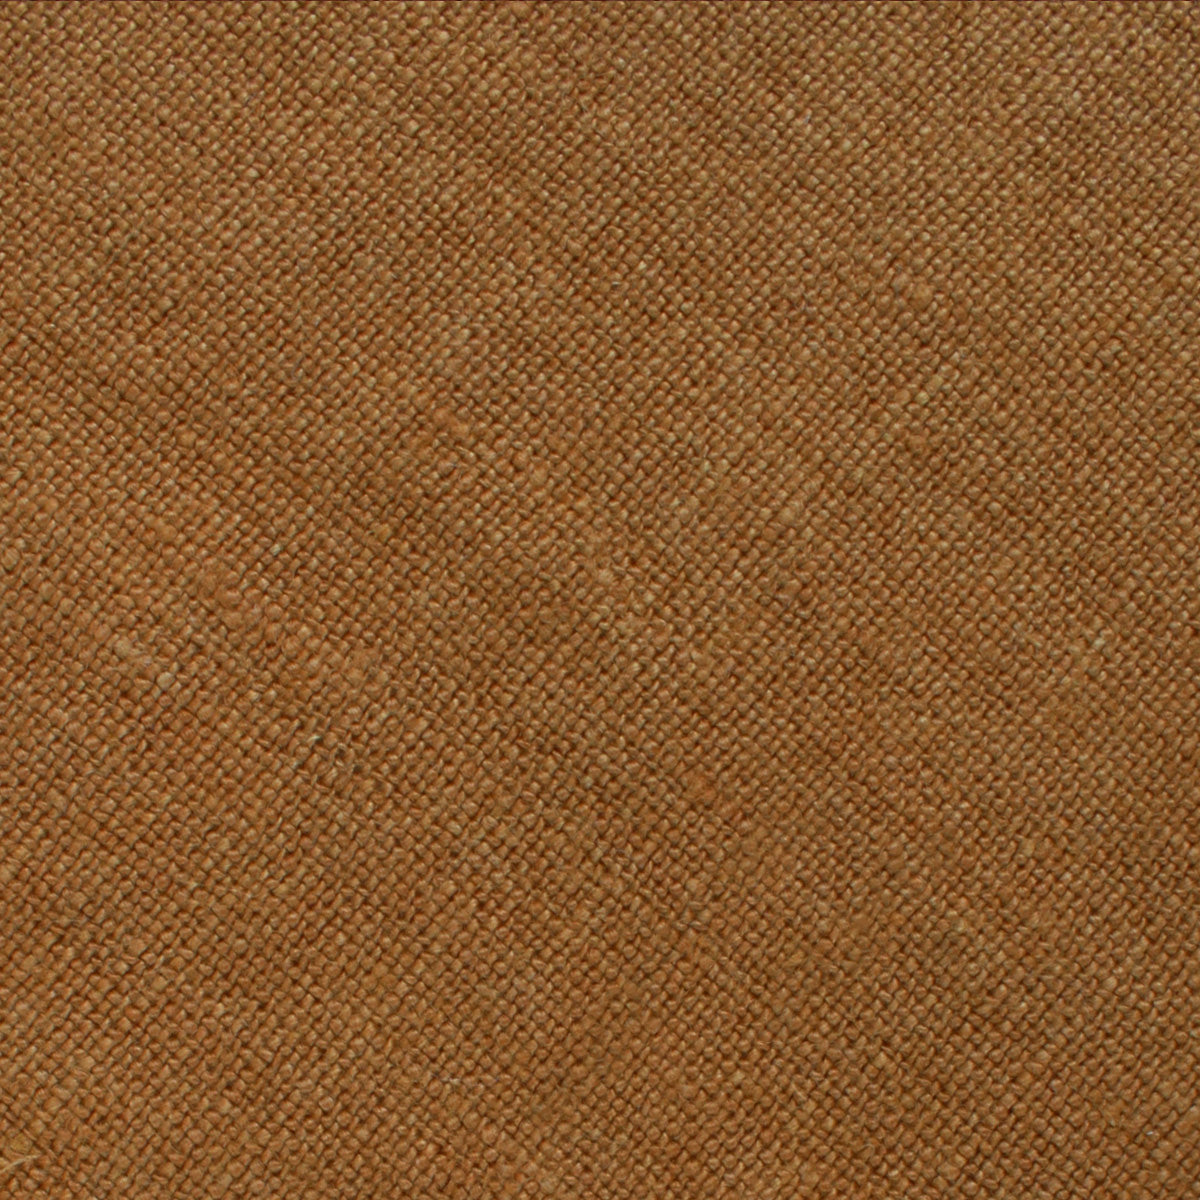 Dark Mustard Brown Linen Fabric Swatch